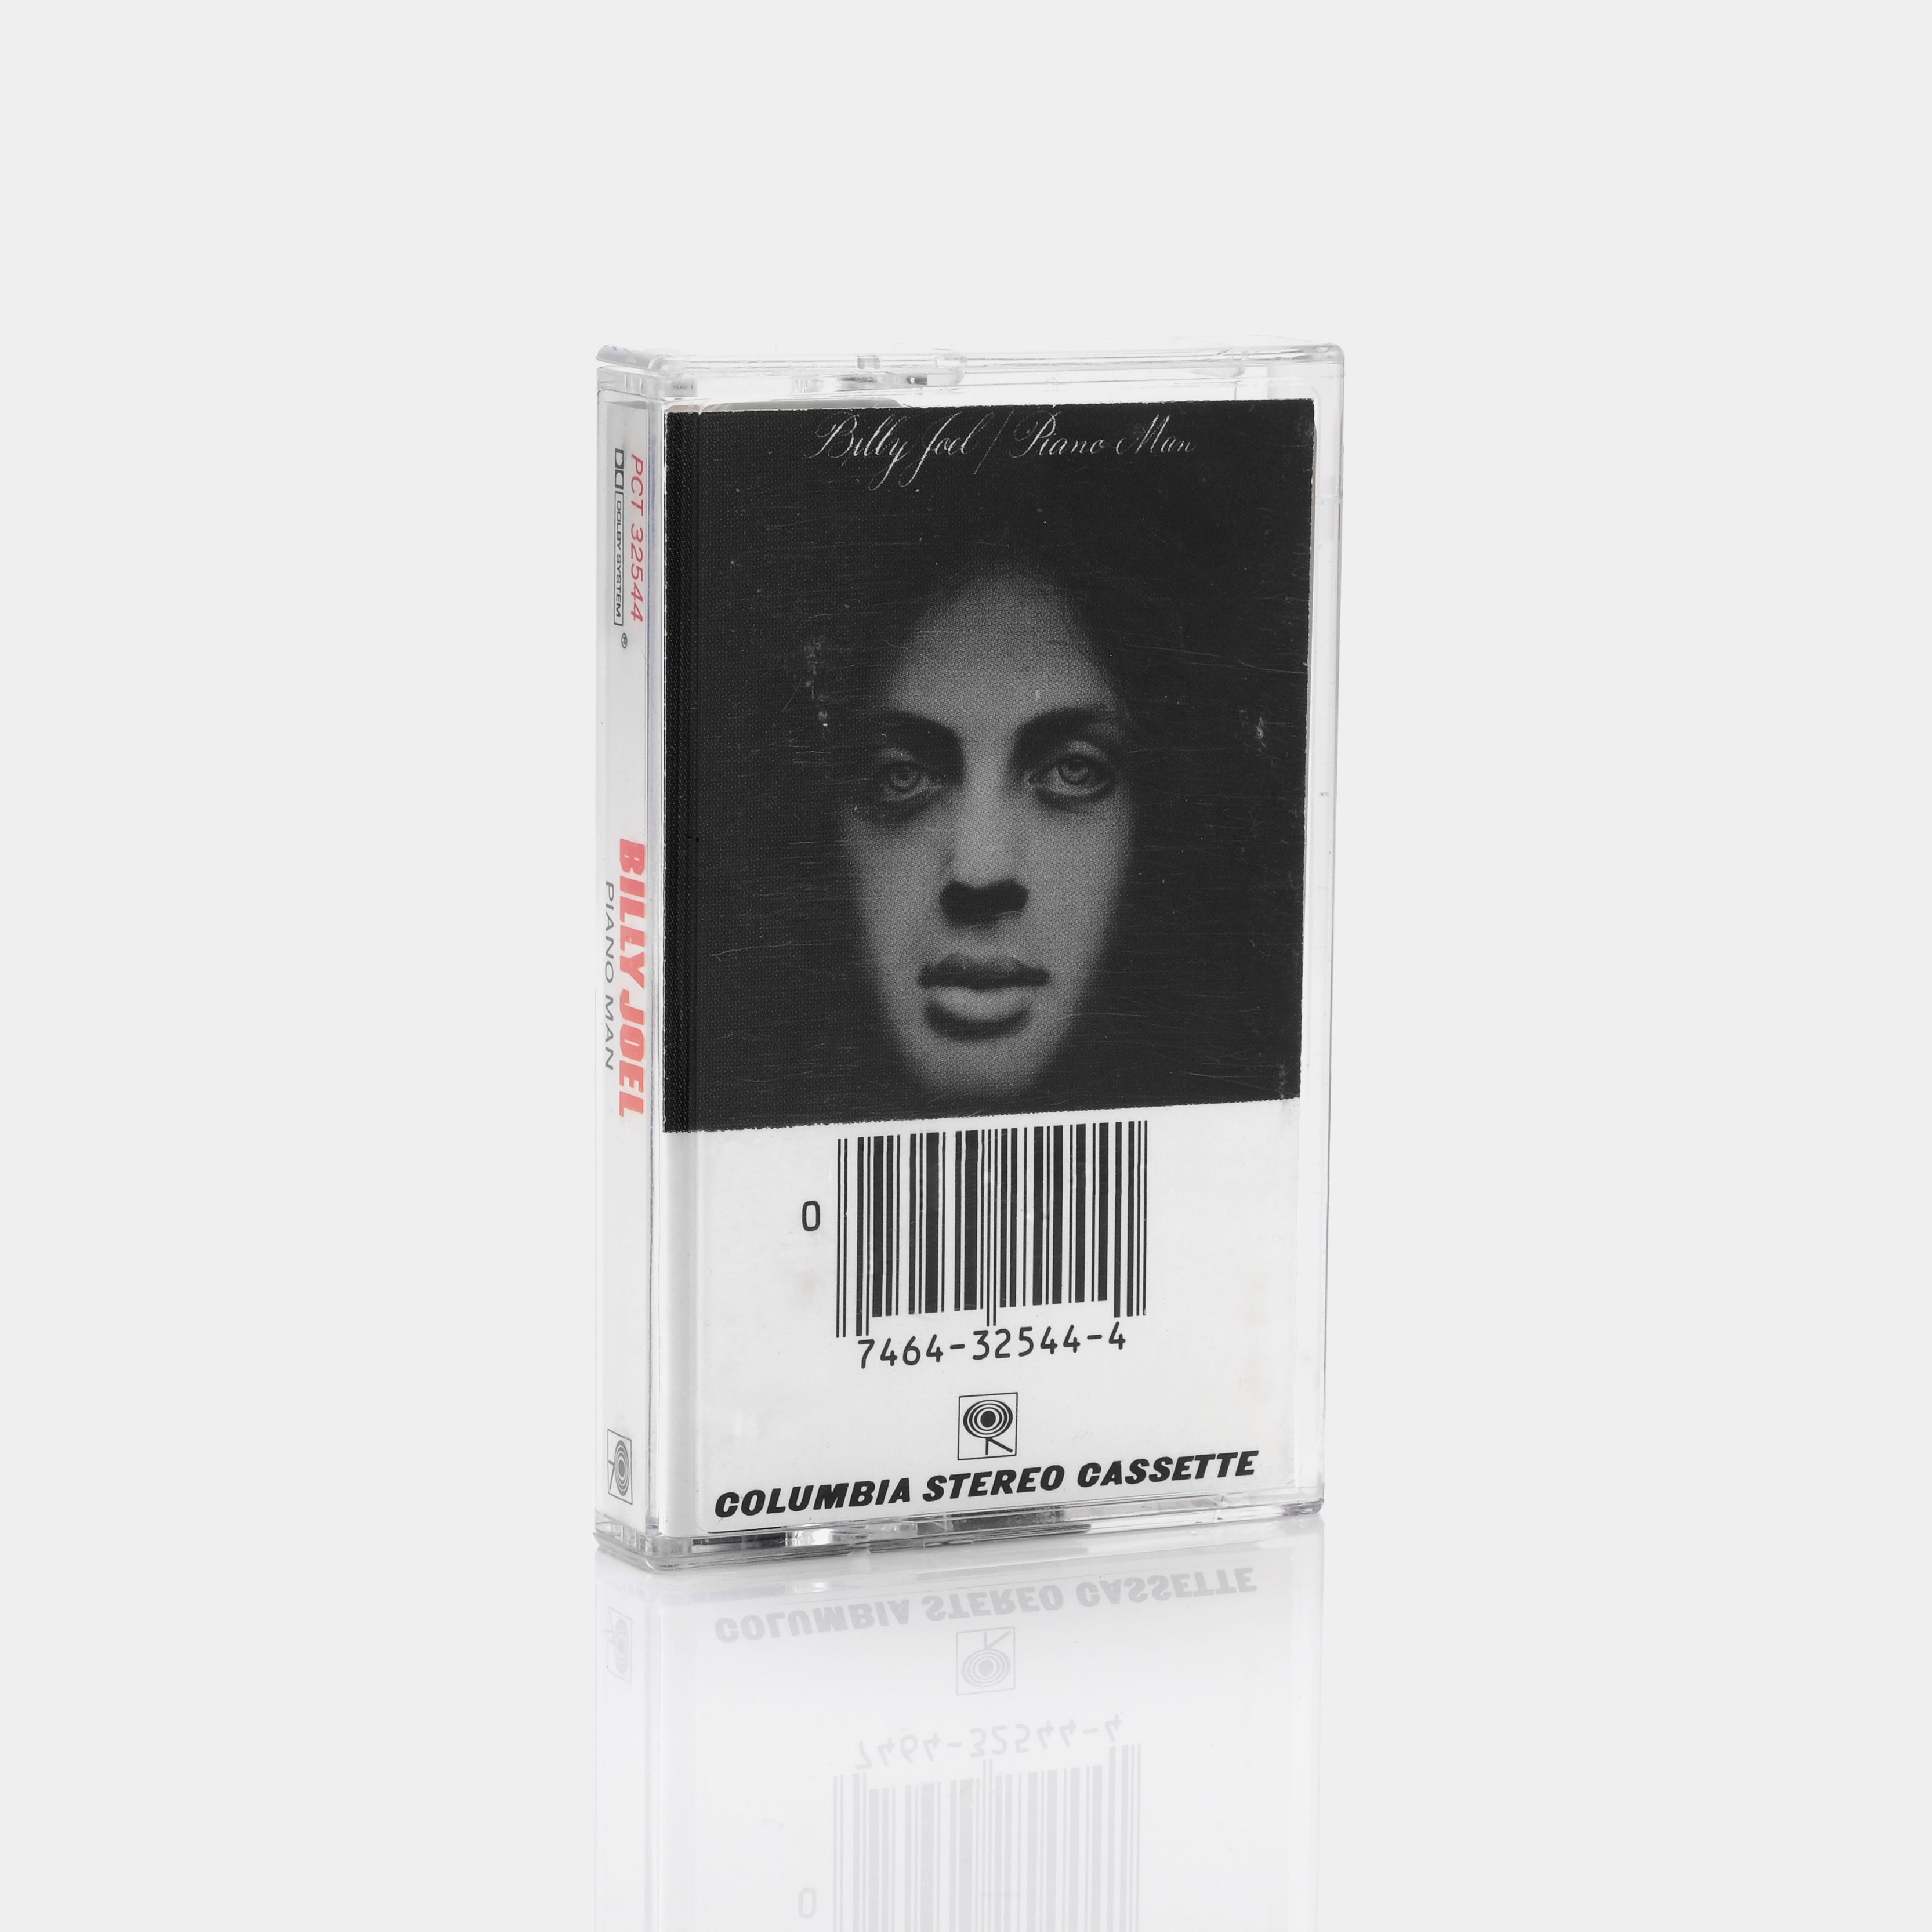 Billy Joel - Piano Man Cassette Tape